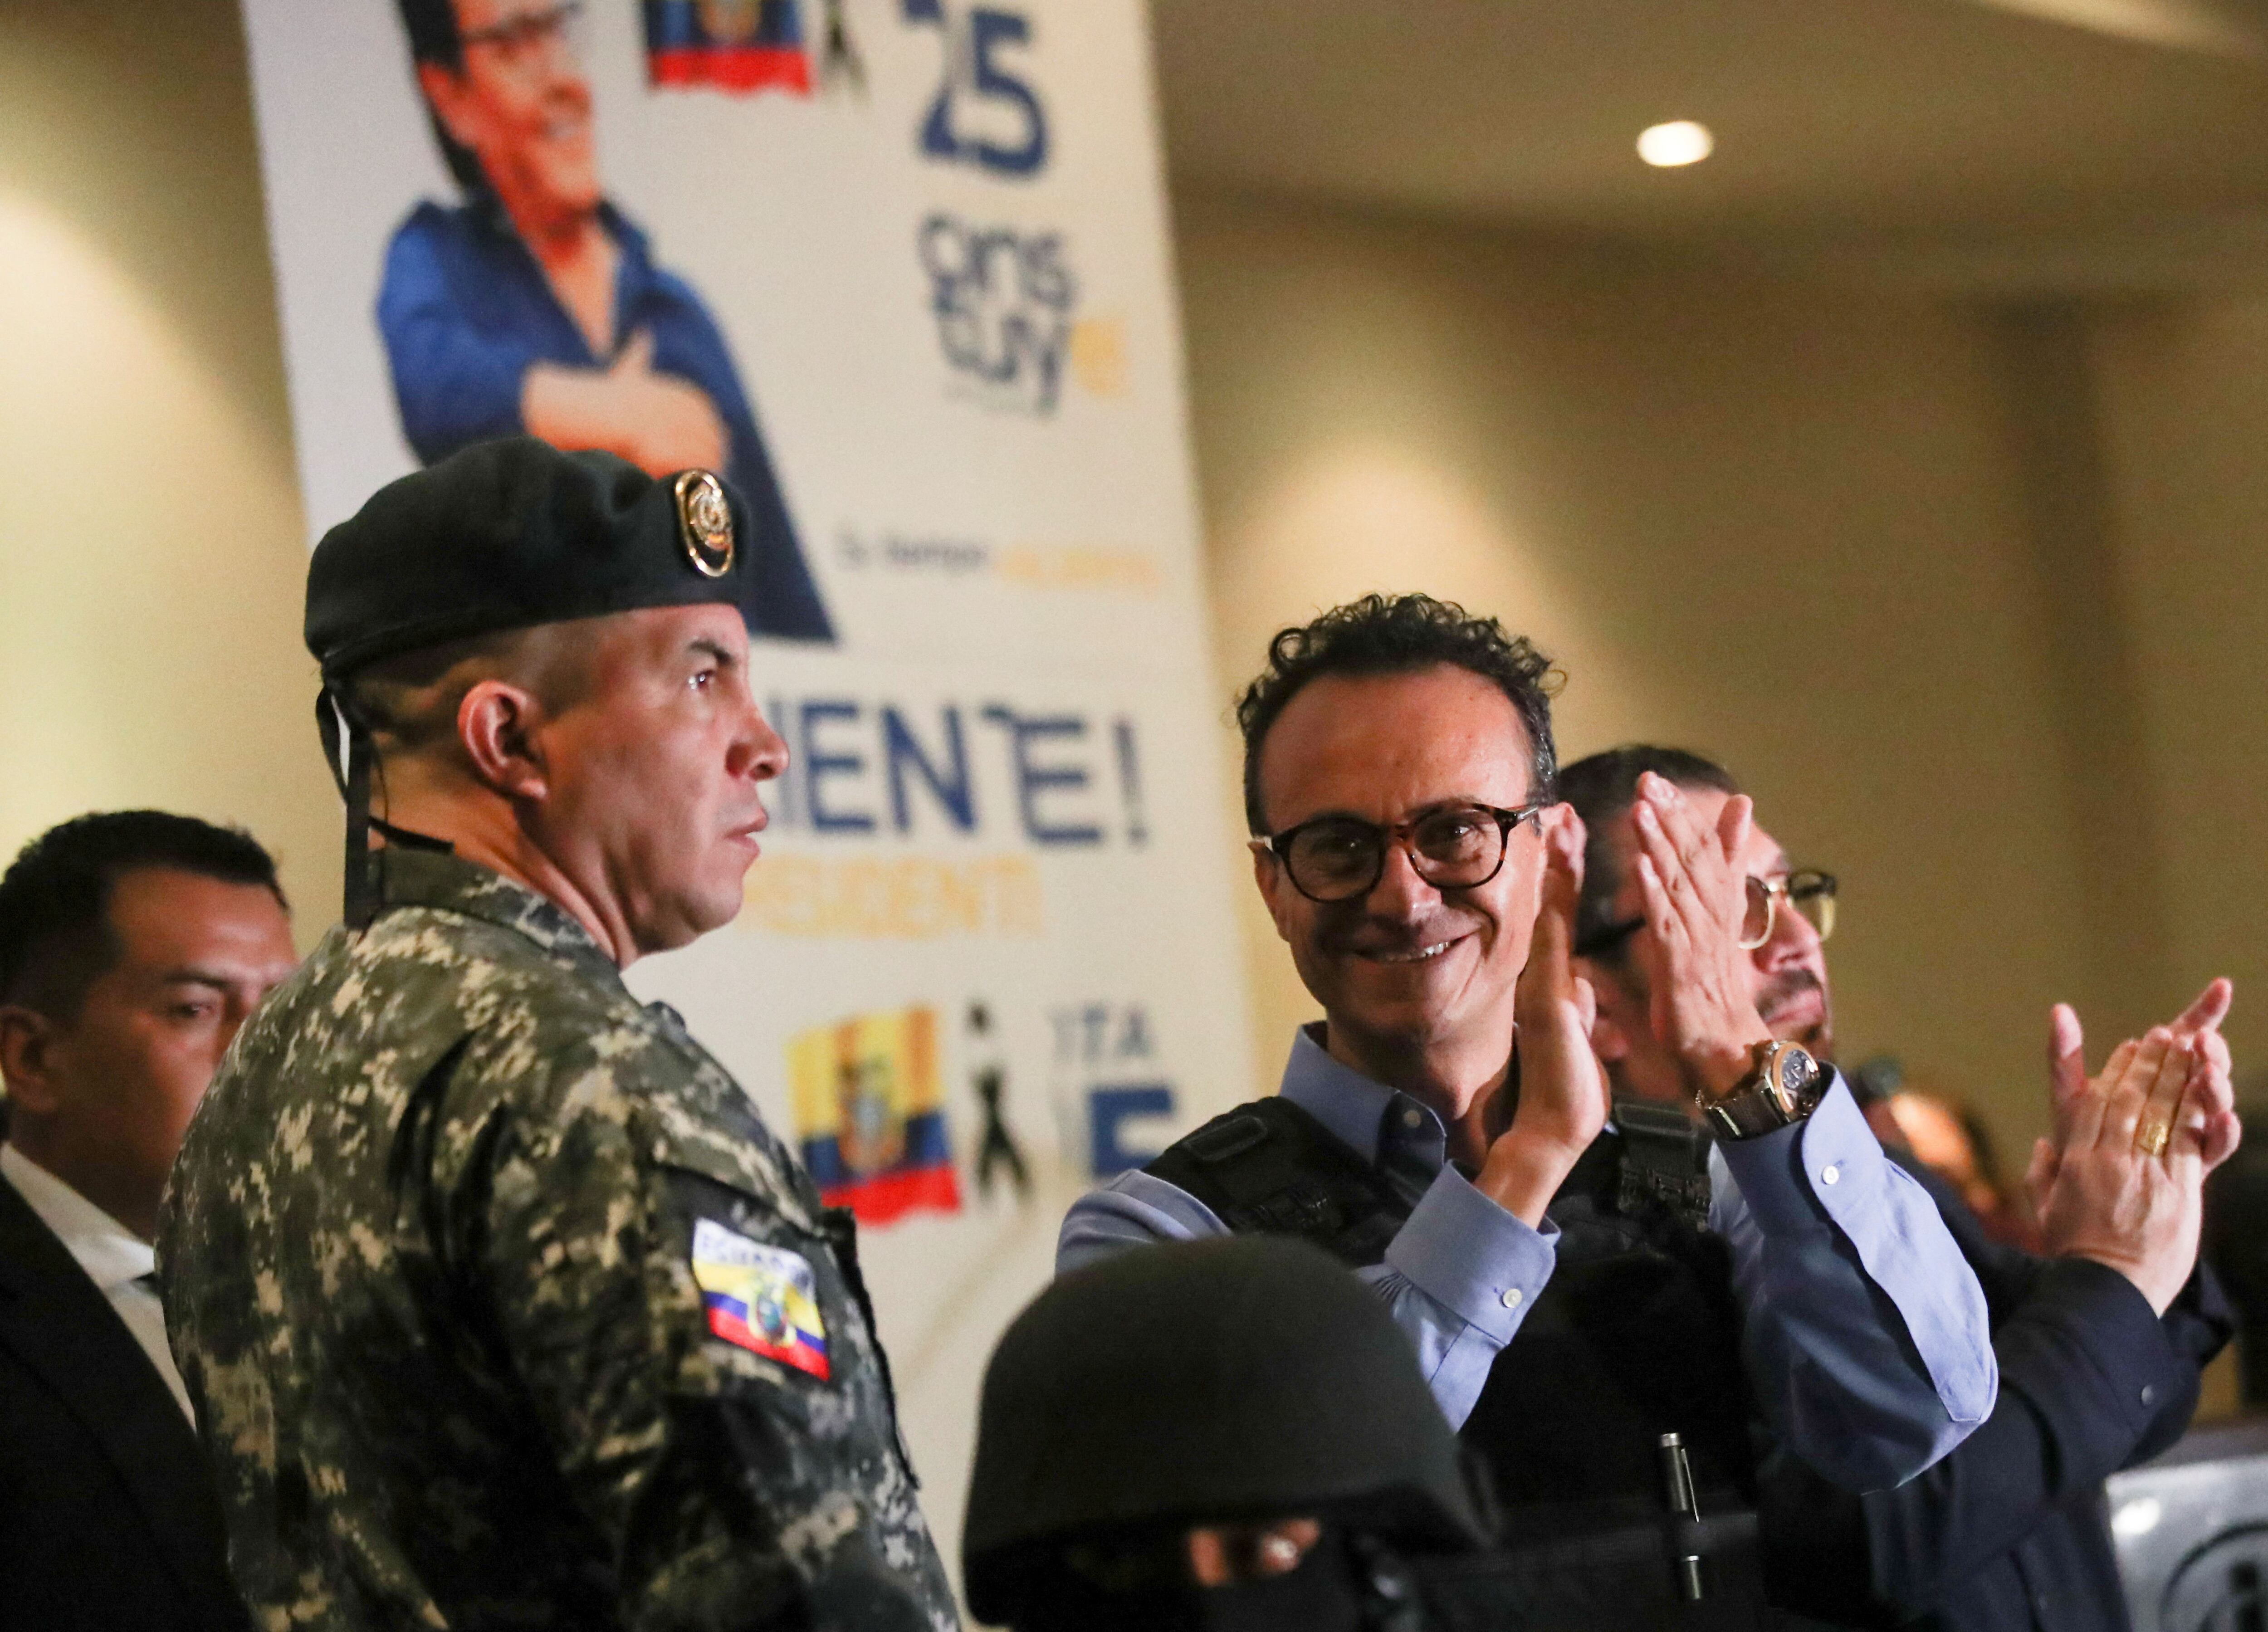 Christian Zurita, candidato reemplazante de Fernando Villavicencio, aceptó el tercer lugar en las elecciones. (REUTERS/Henry Romero)